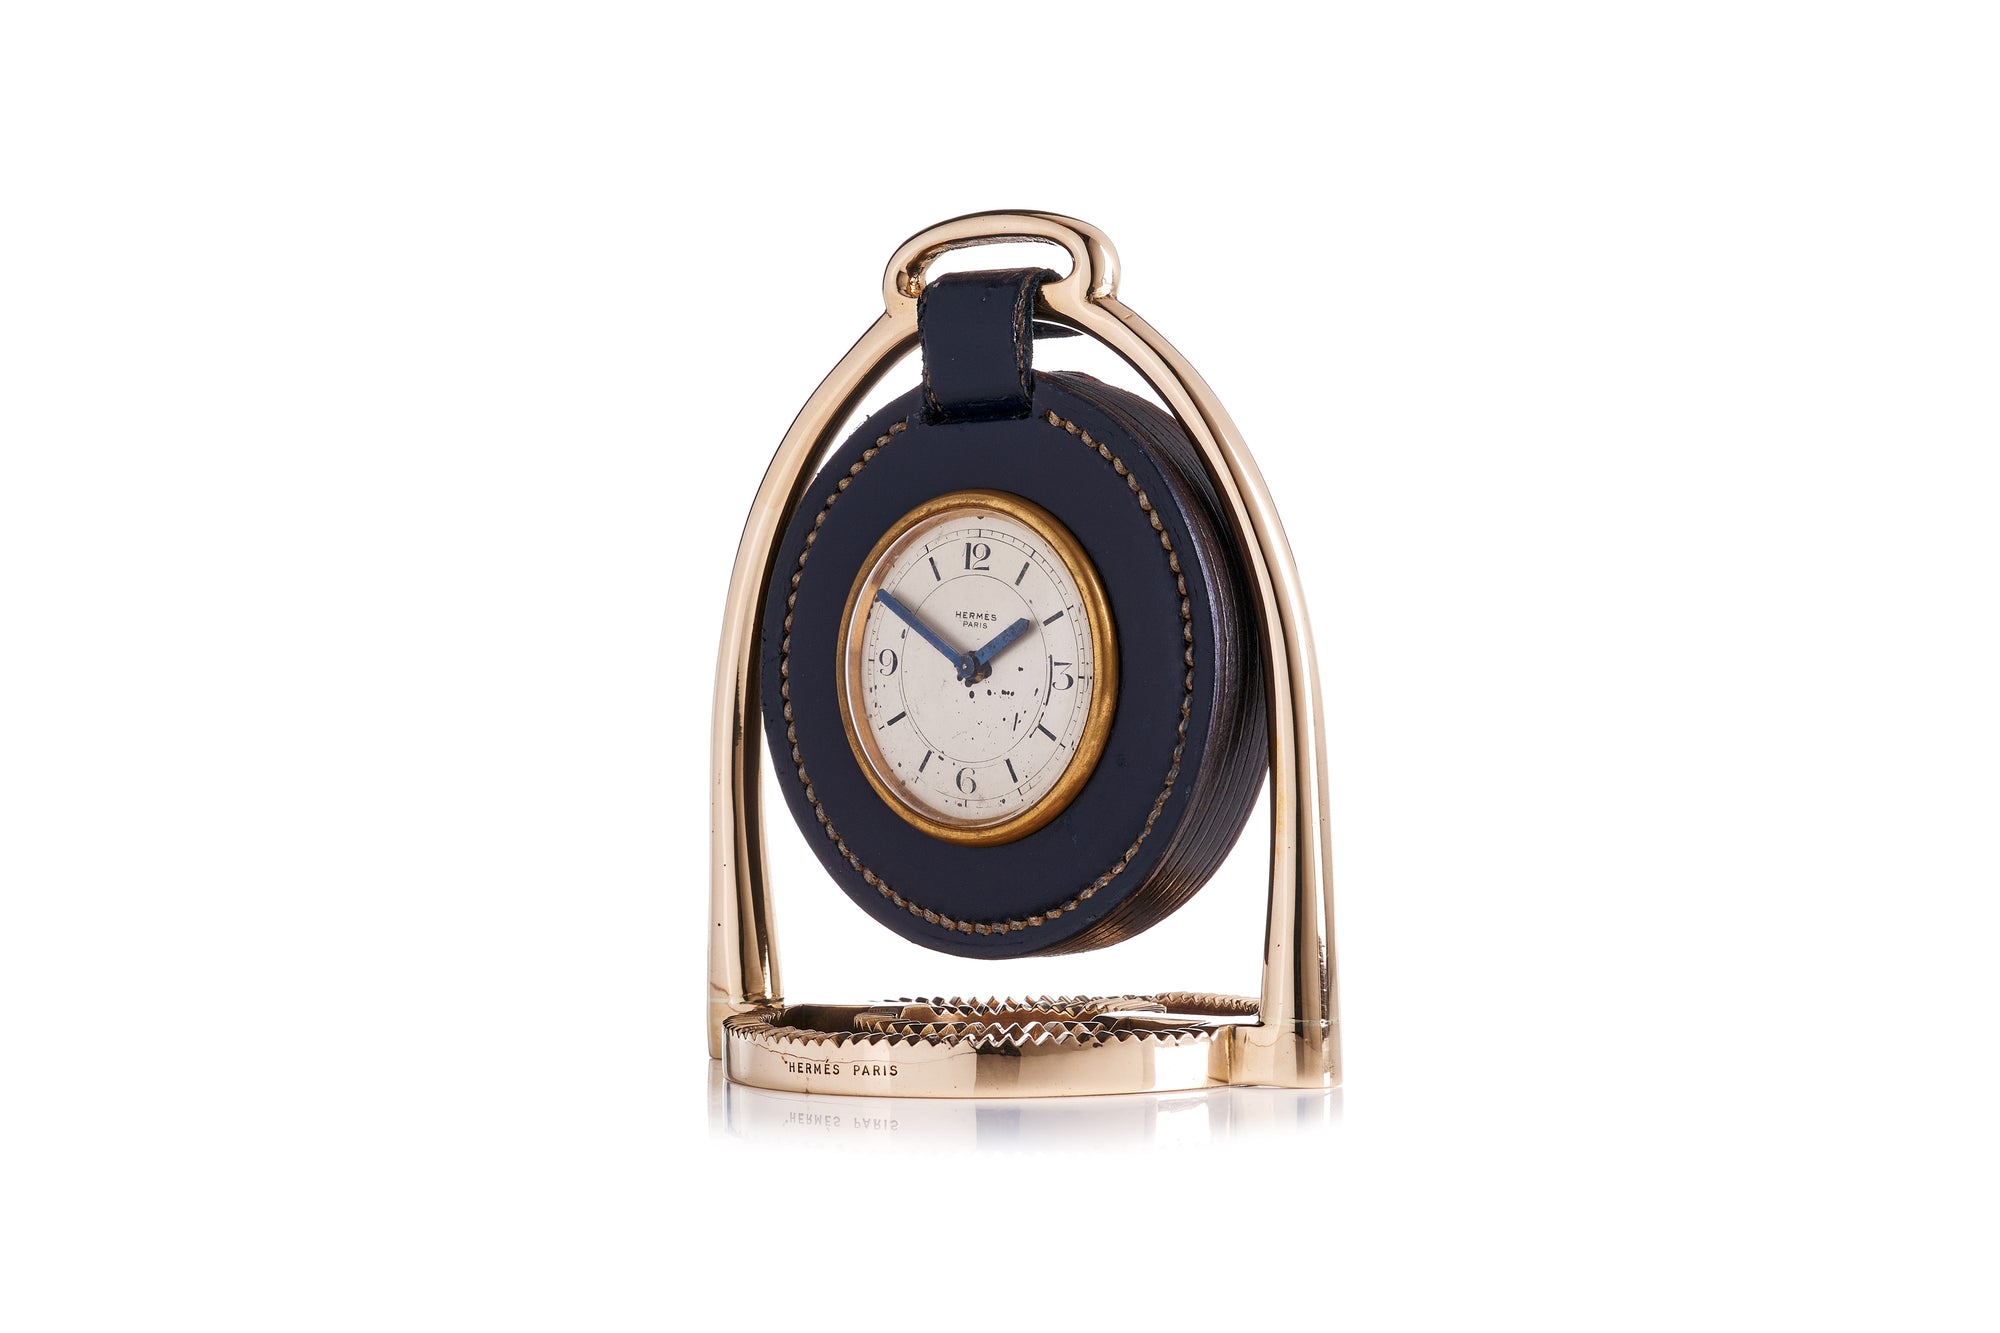 Hermes Clock, Paul Dupre-Lafon